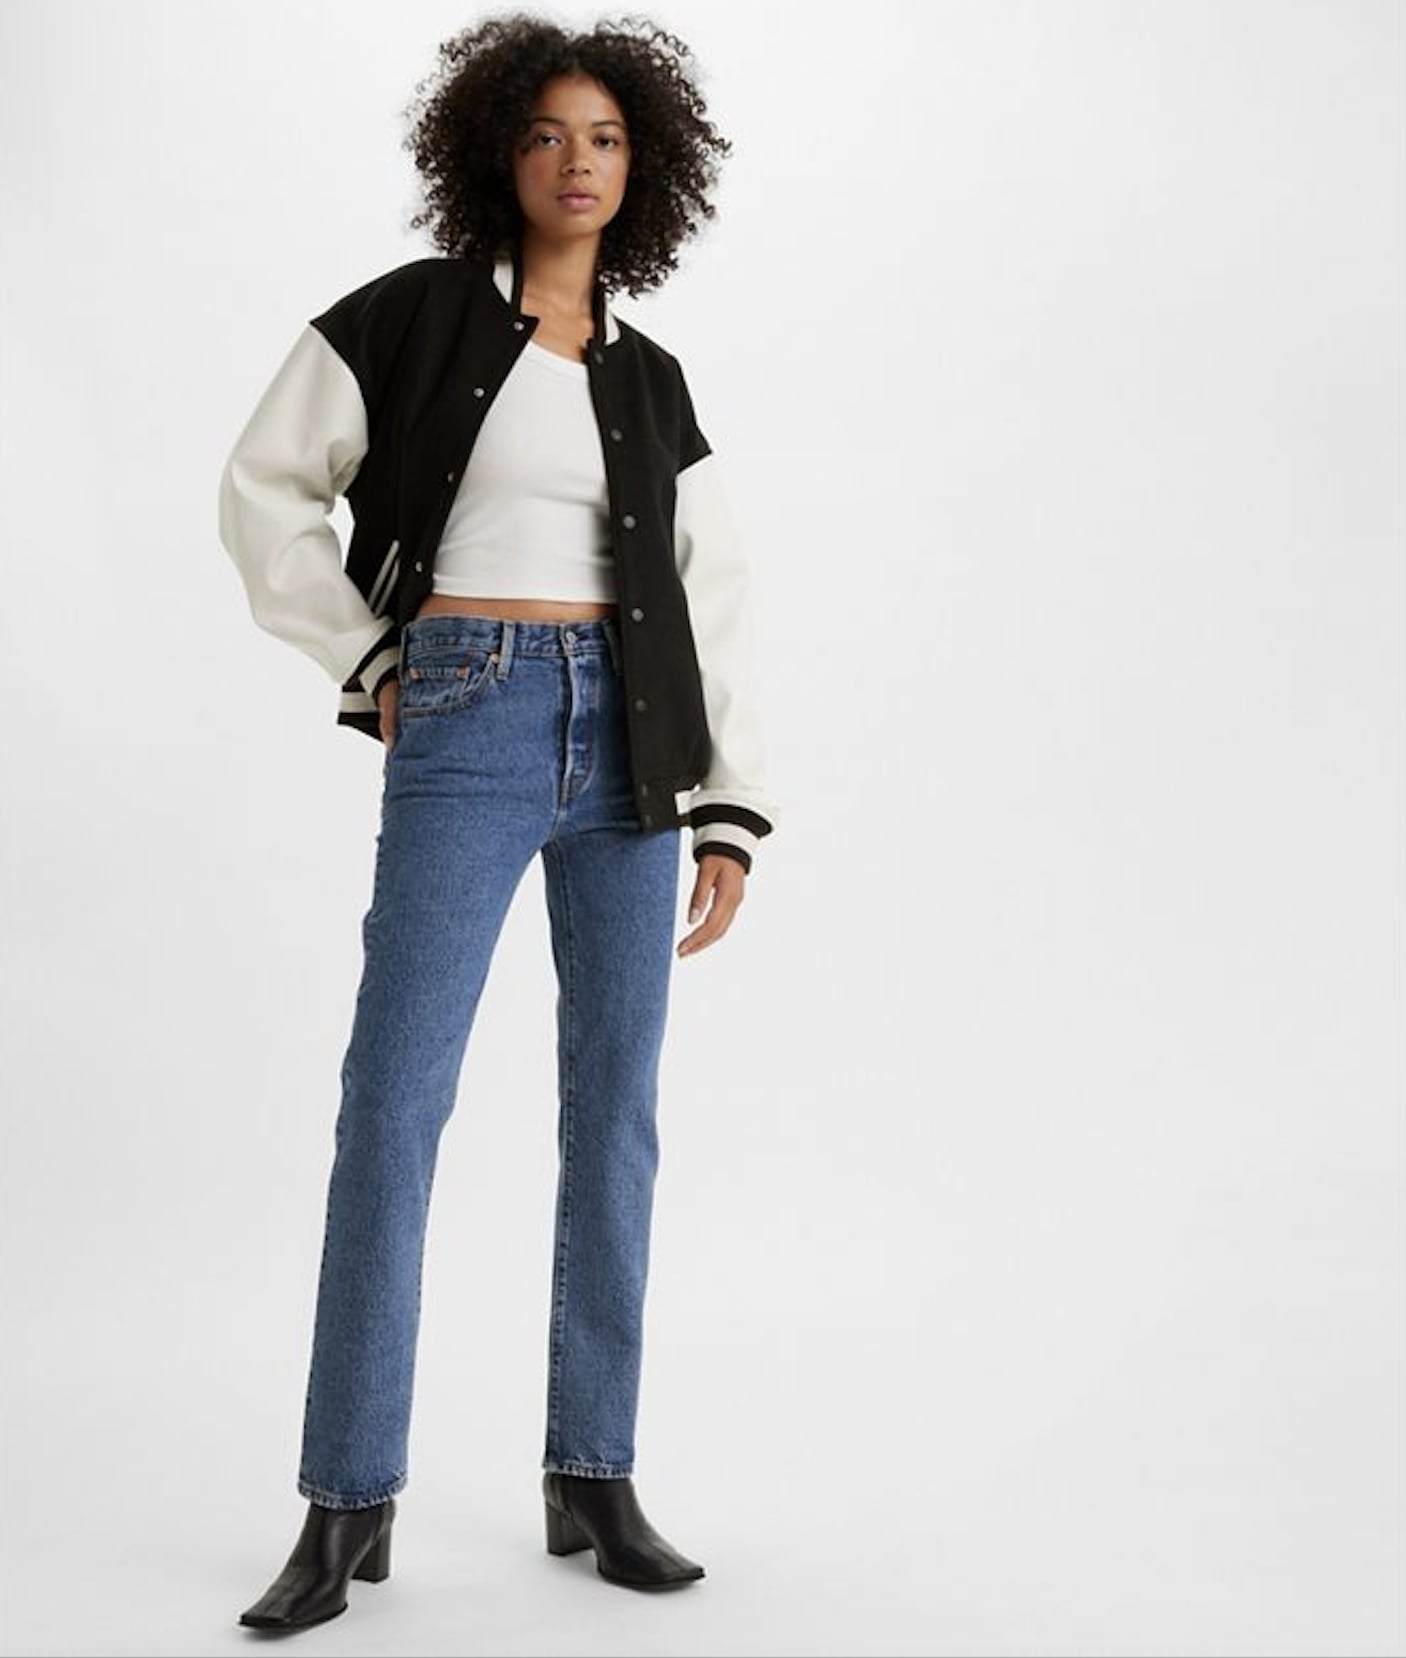 vals vermijden puree Best Levi's Jeans For Women | POPSUGAR Fashion